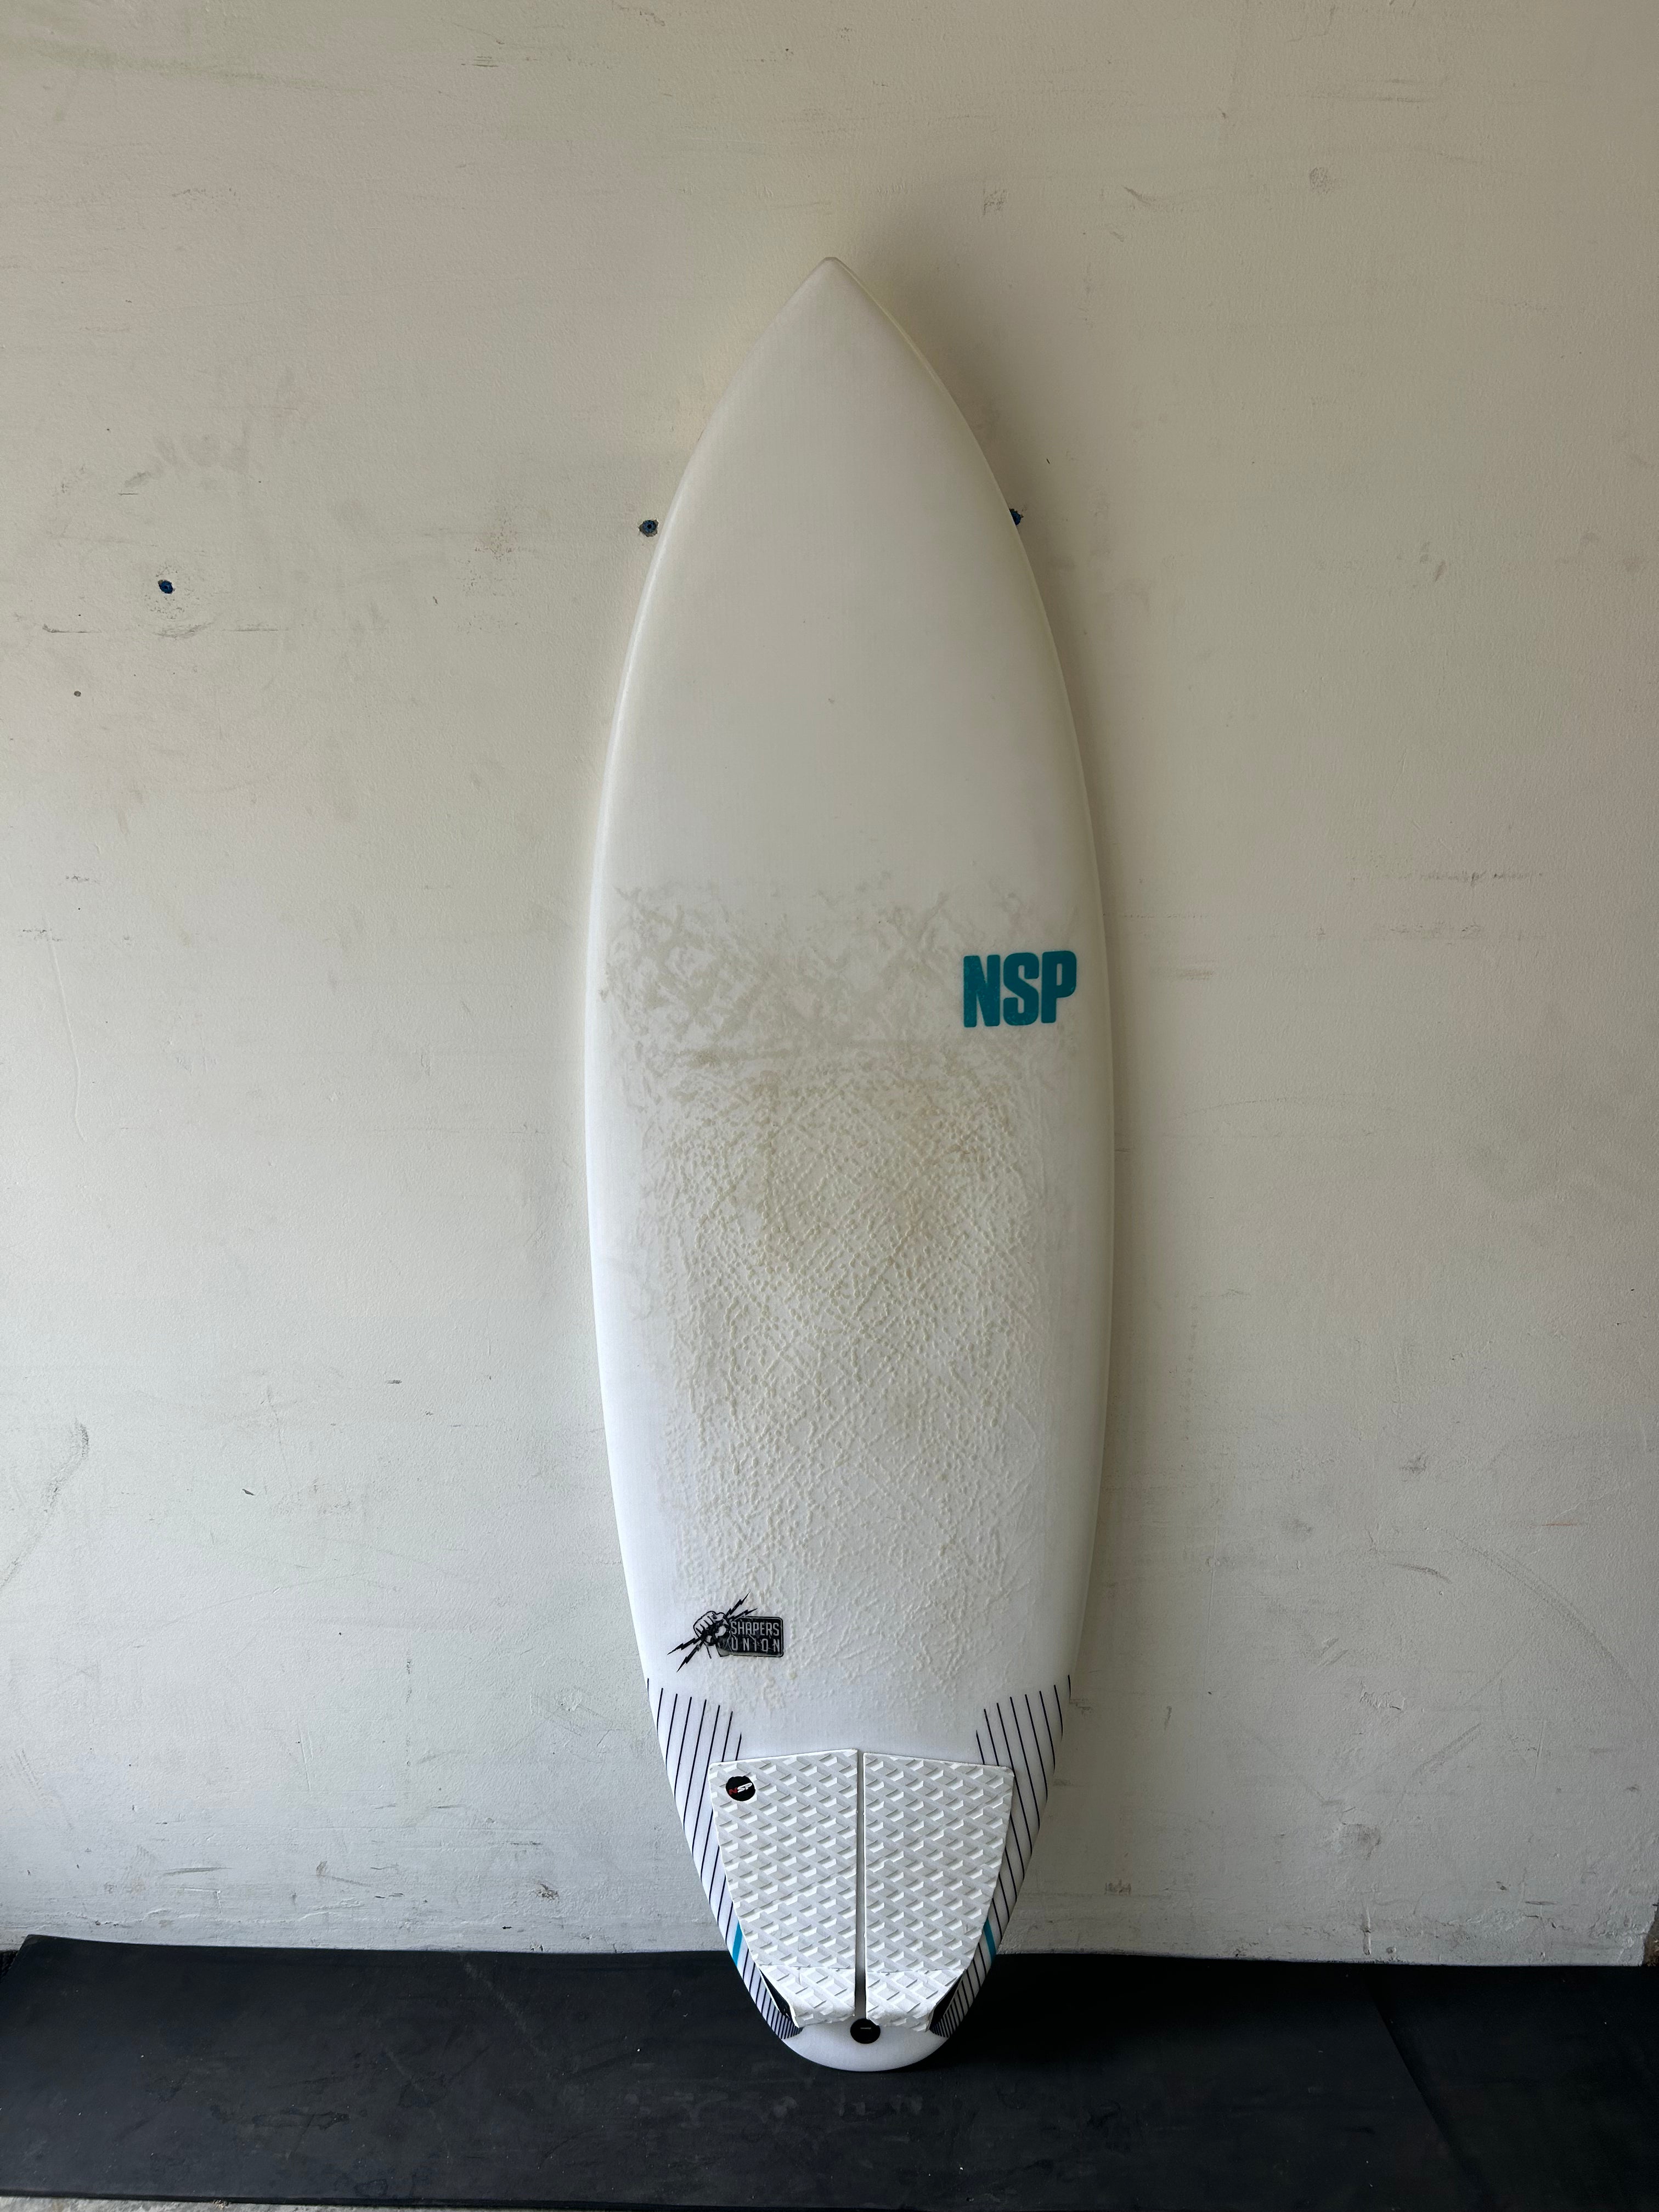 NSP Tinder-D8 5'8 - Protech - Demo Board    Aroona Surf, Sydney